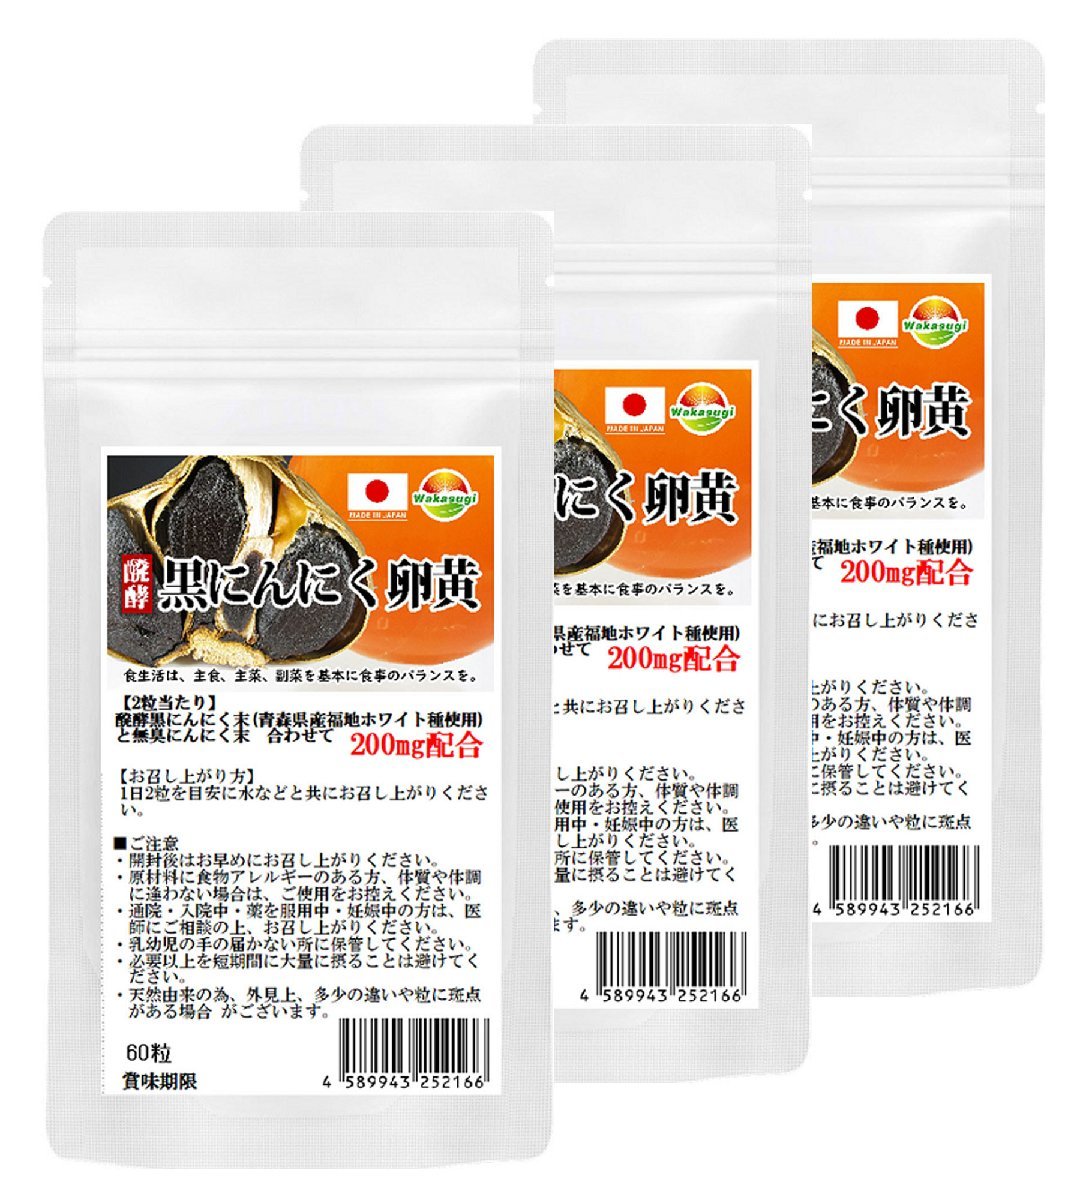 .. чёрный чеснок яичный желток supplement 60 шарик 3 пакет комплект итого 150 шарик примерно 3. месяц минут Aomori префектура производство Fukuchi белый вид использование таблеток . модель 